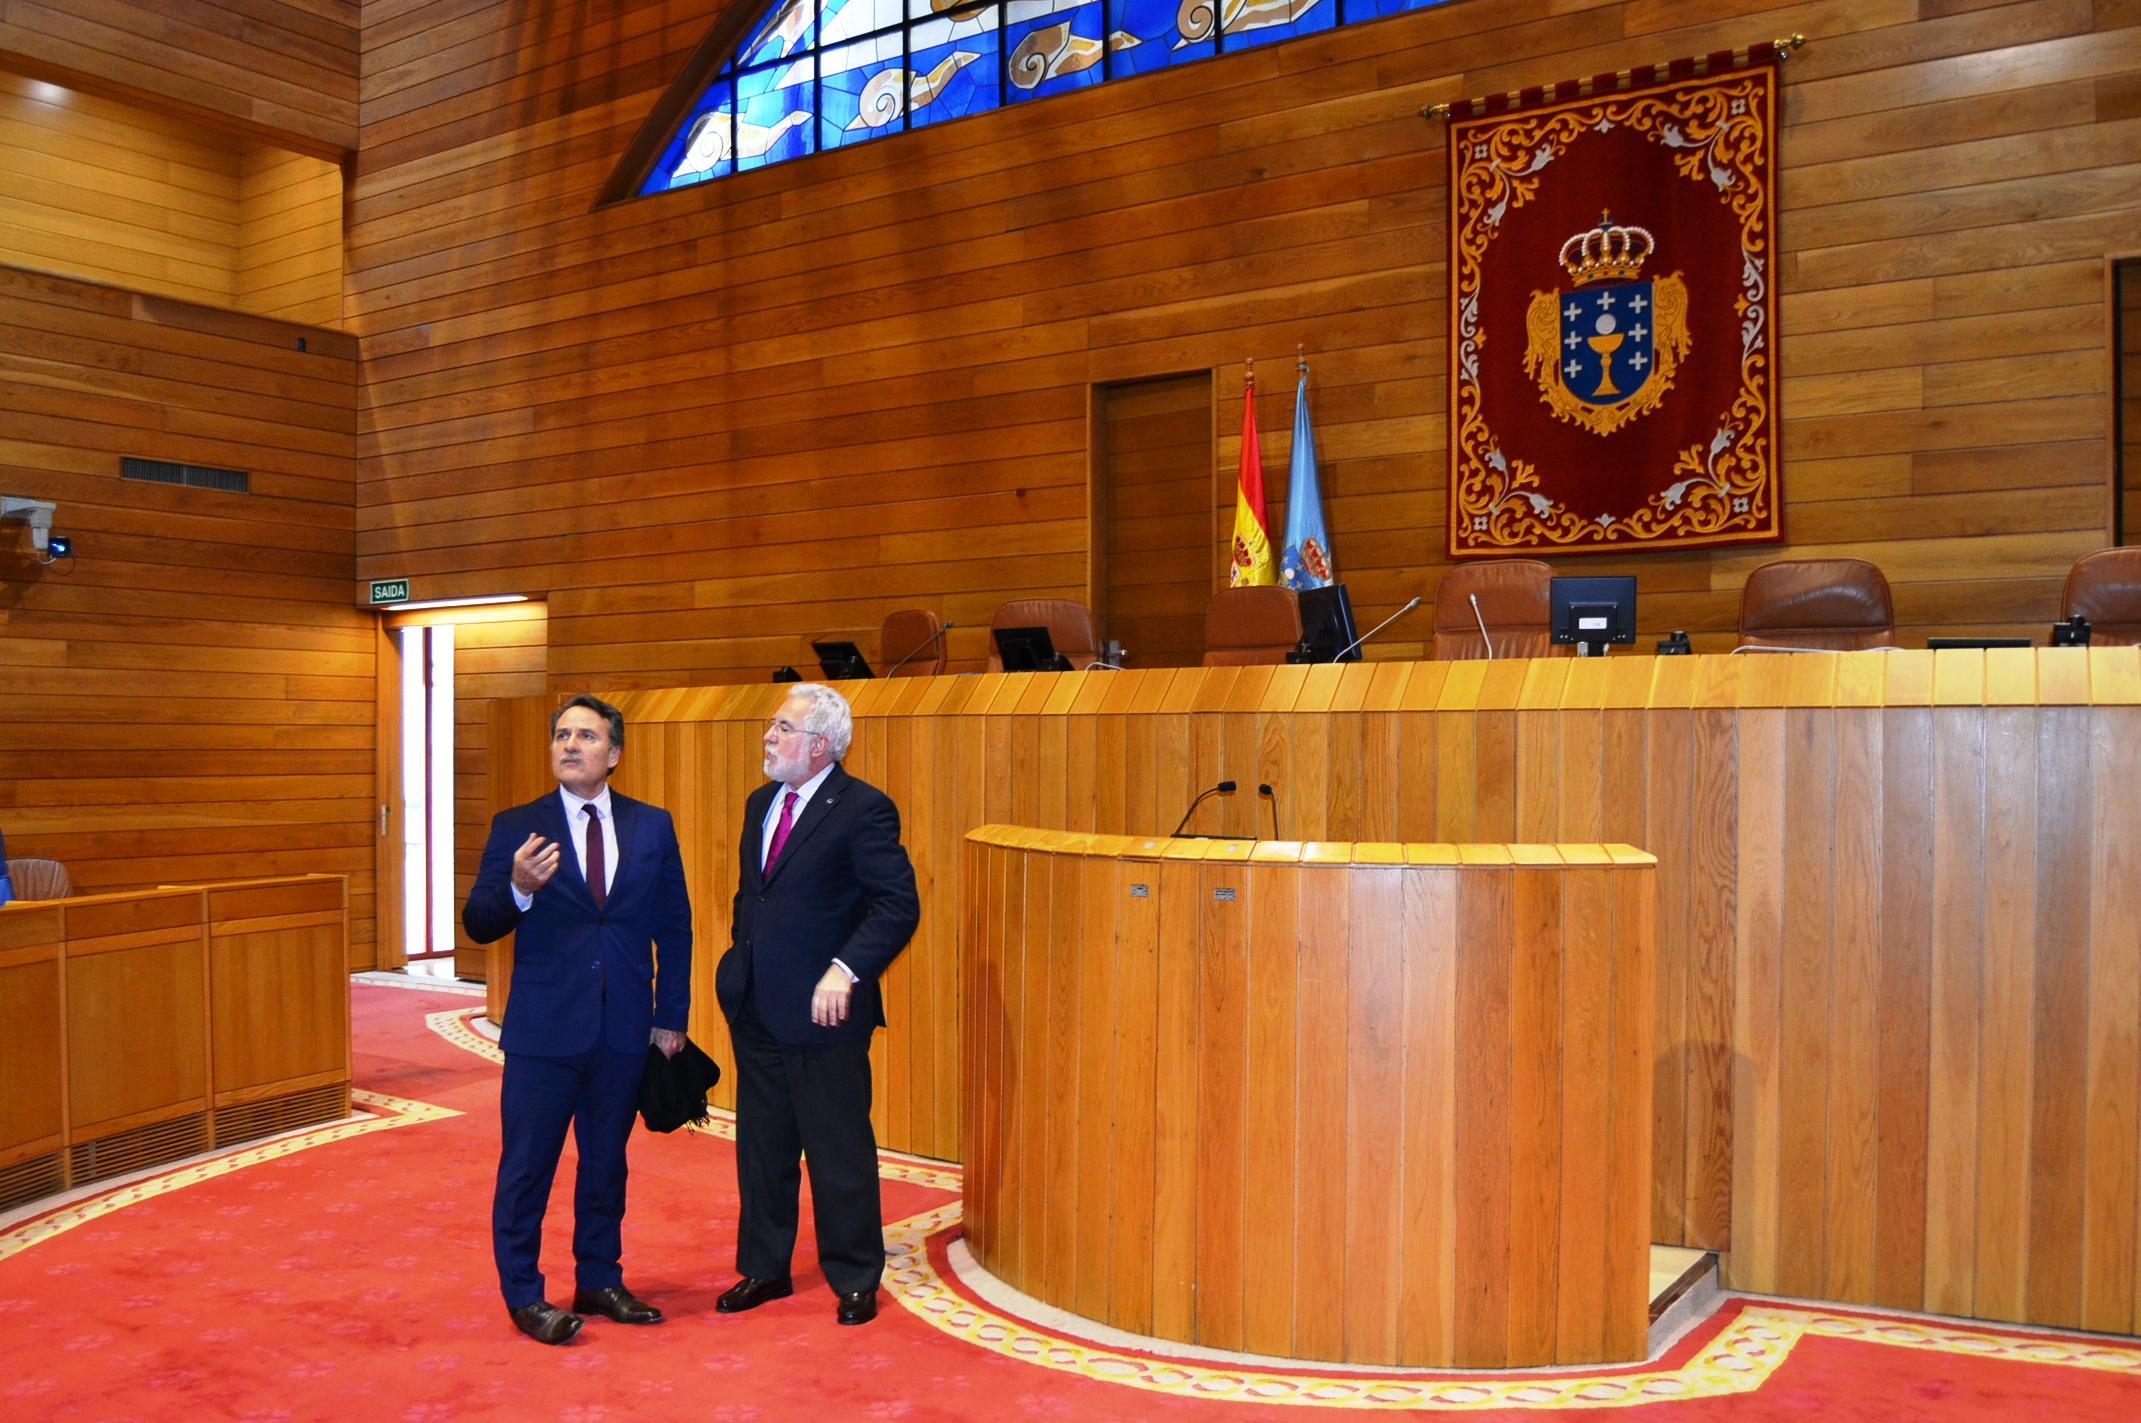 O embaixador de Cuba visita o Parlamento de Galicia